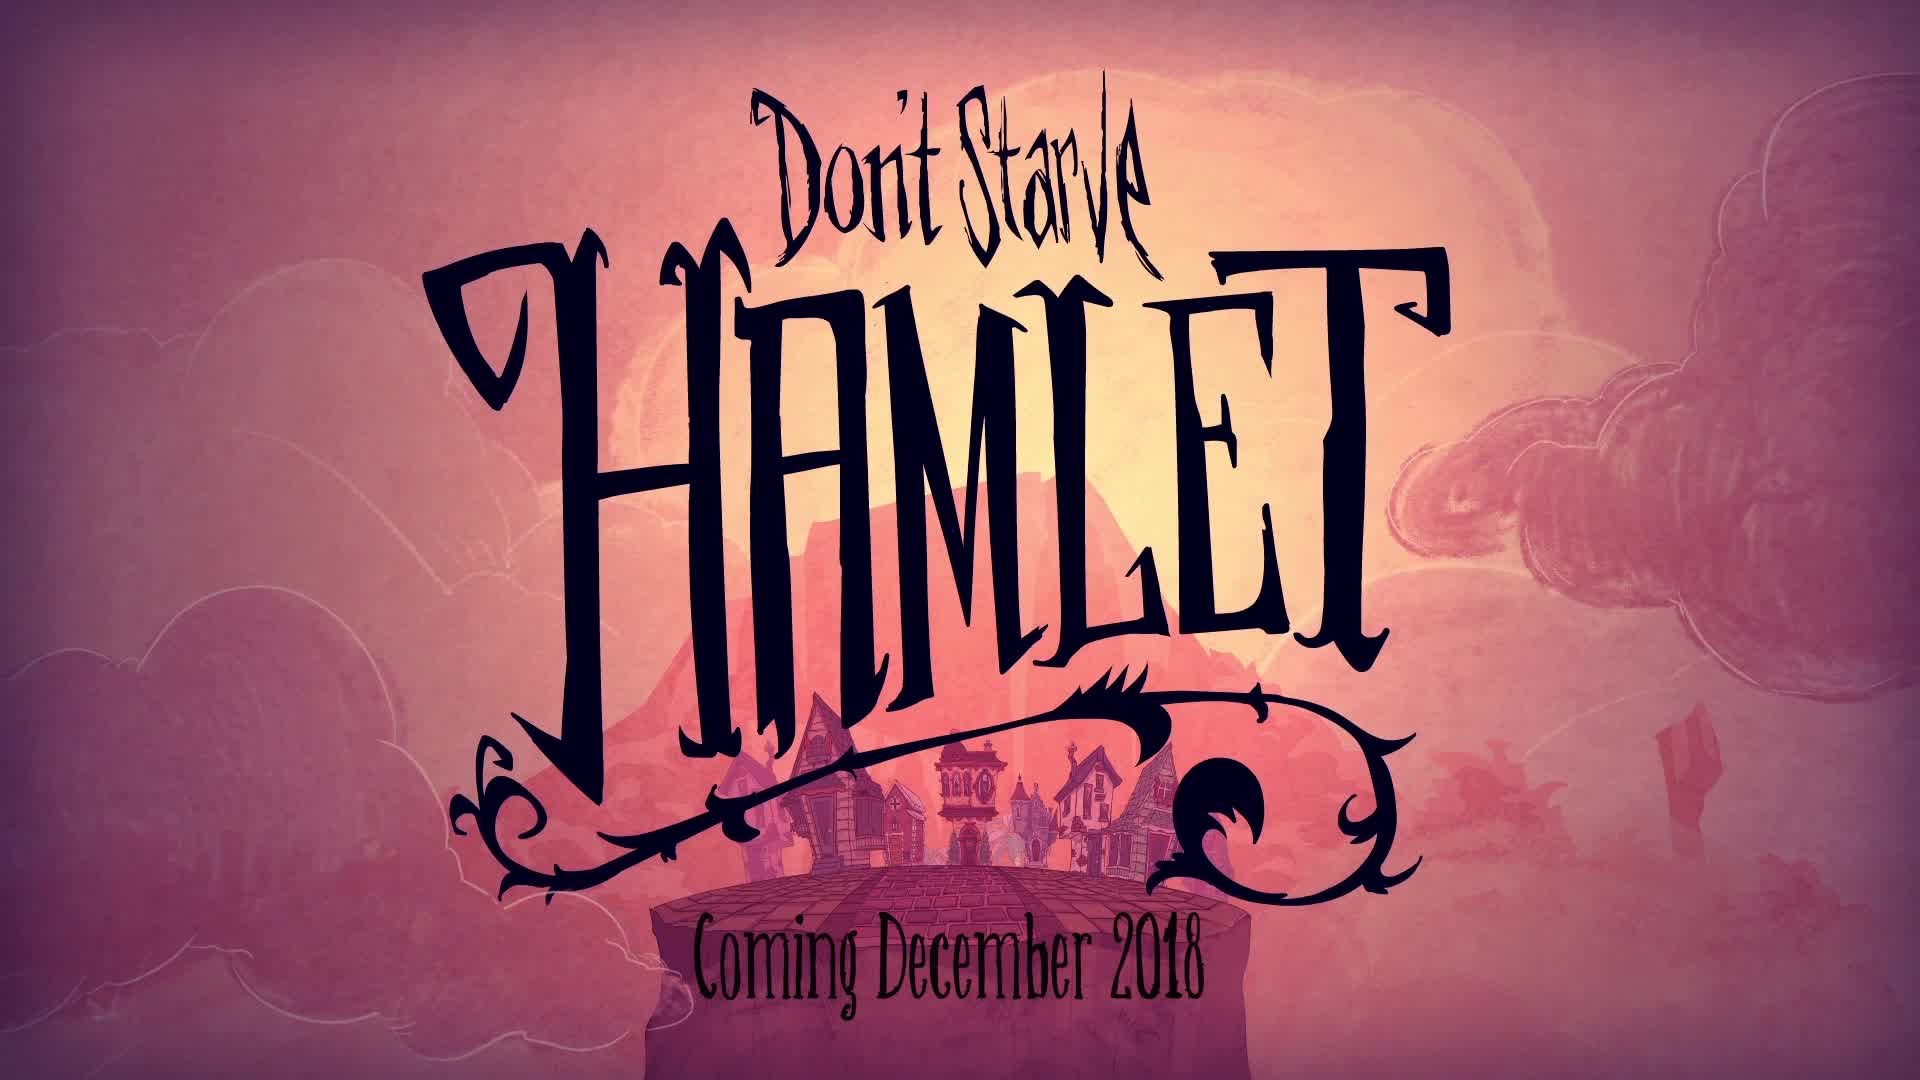 Don't Starve: Hamlet - trailer